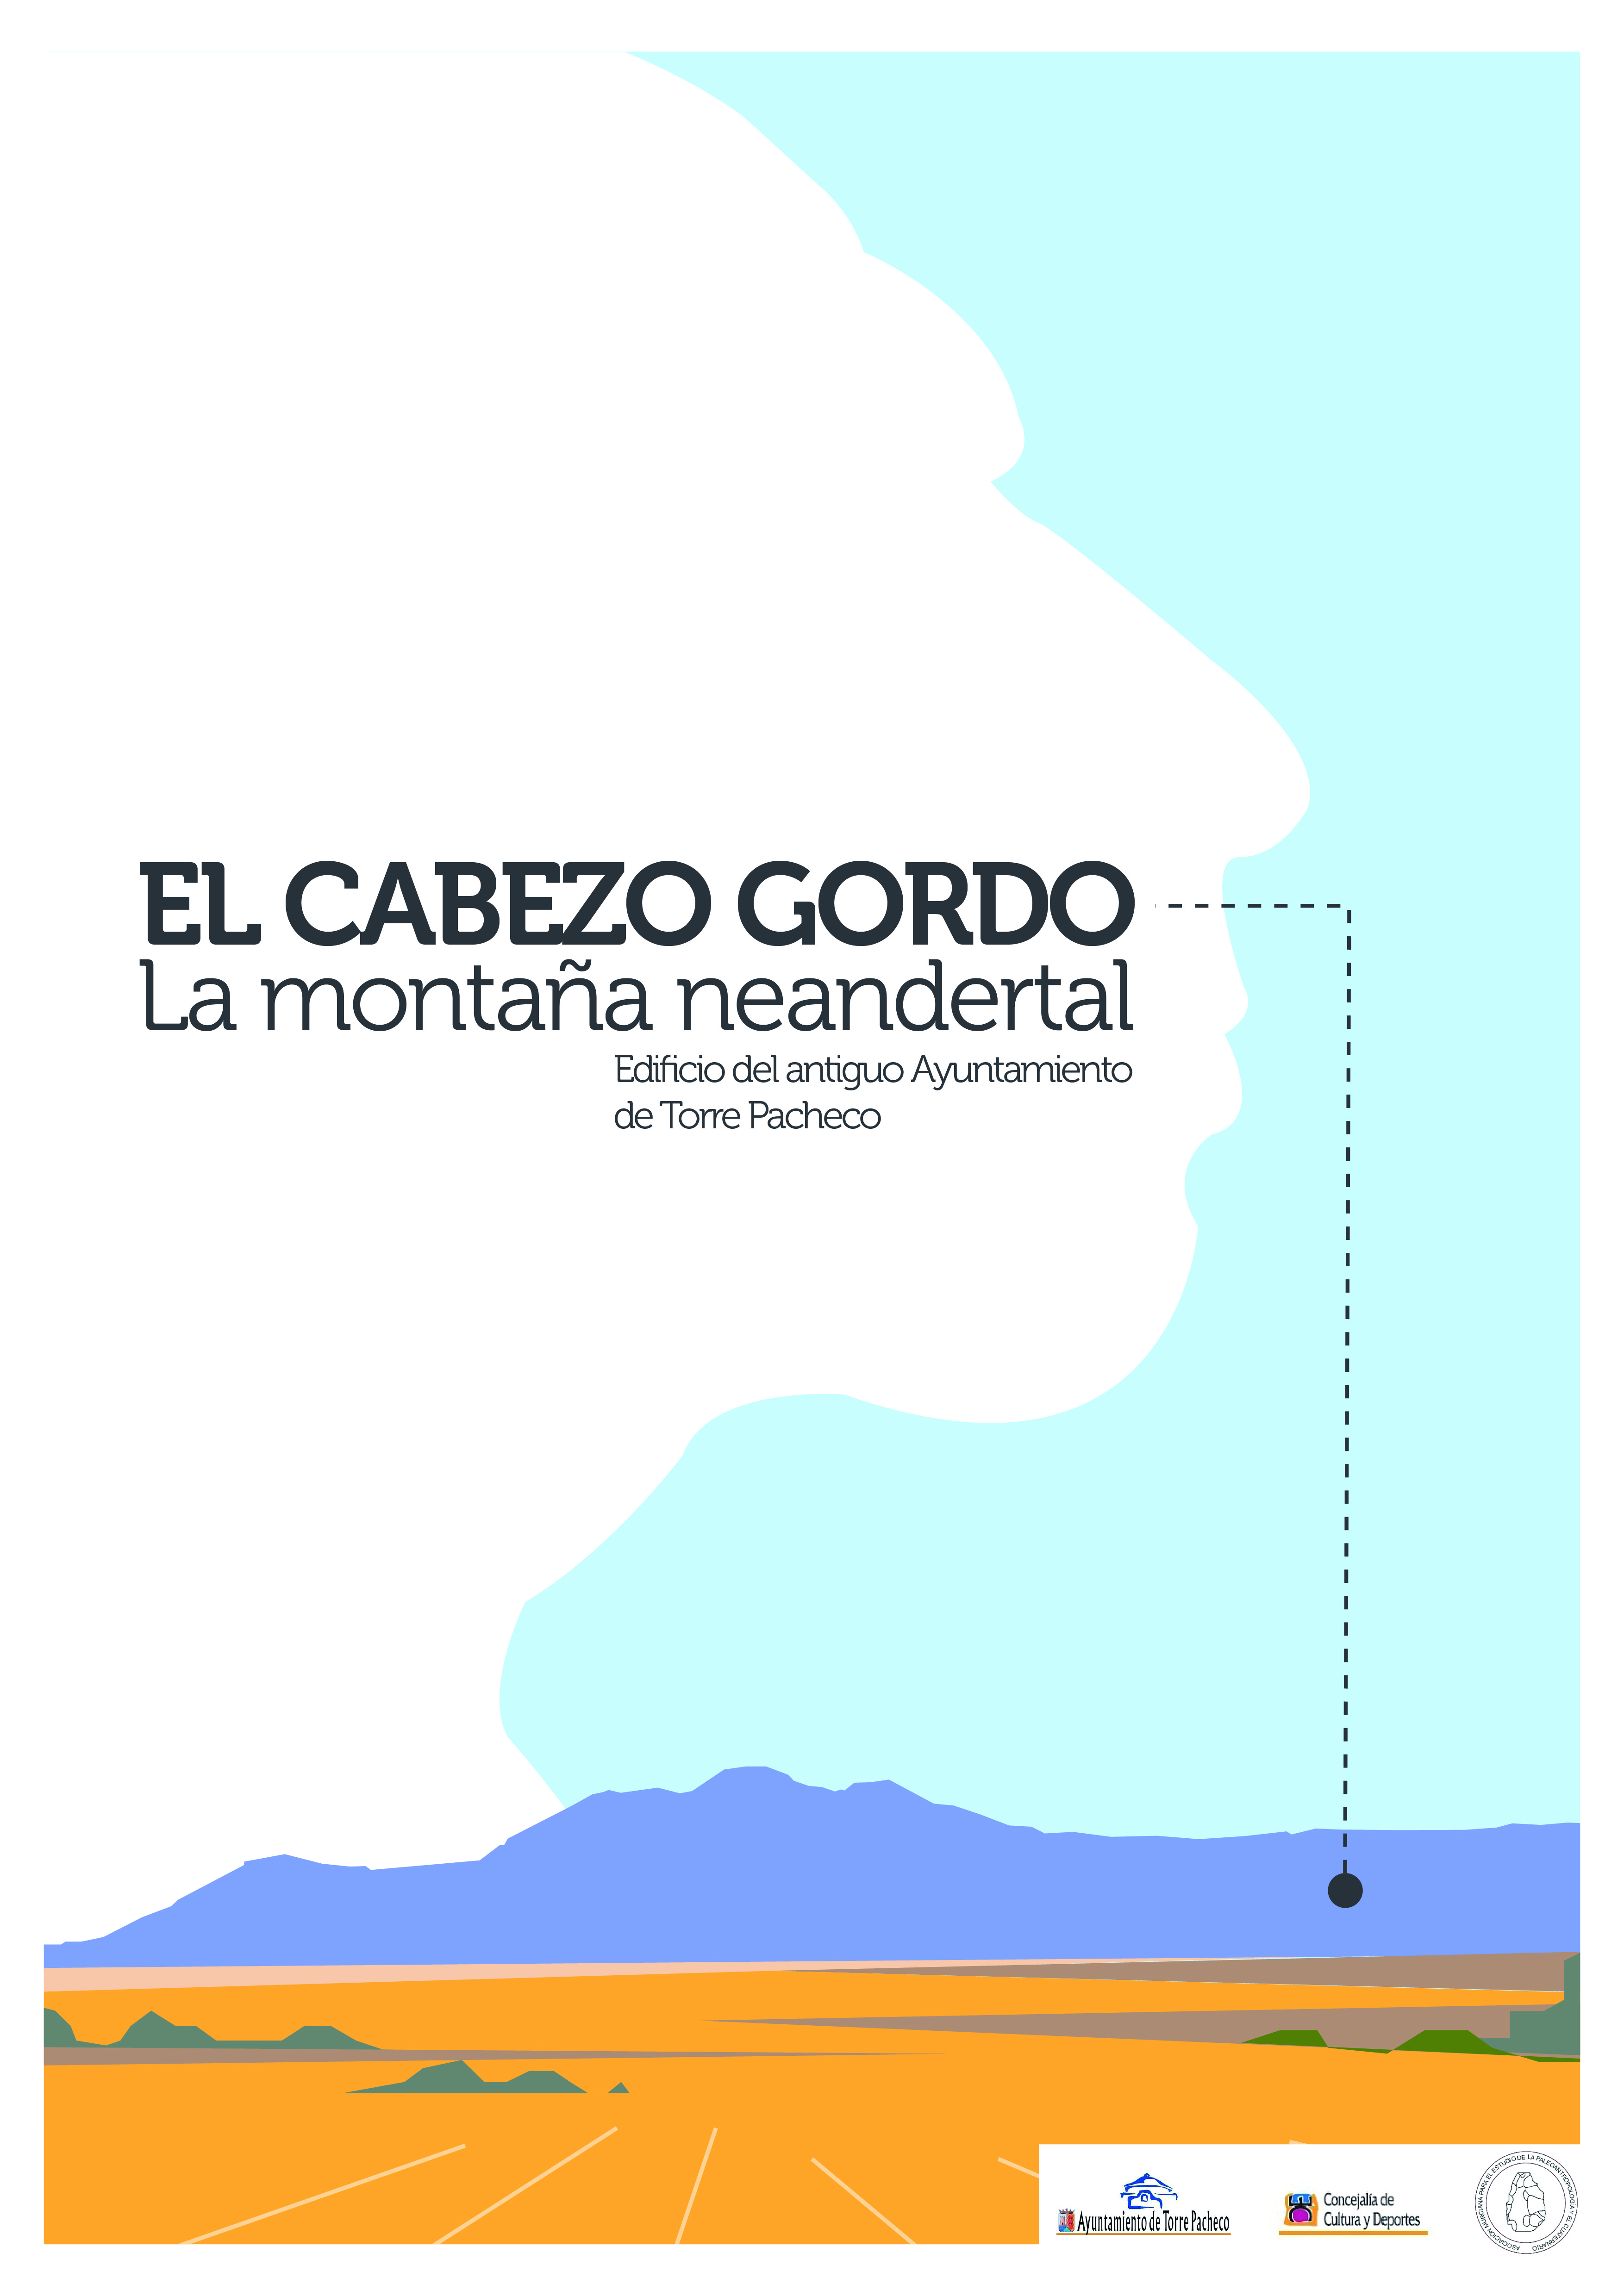 Expo sobre el Cabezo Gordo, con el Ayuntamiento de Torre-Pacheco